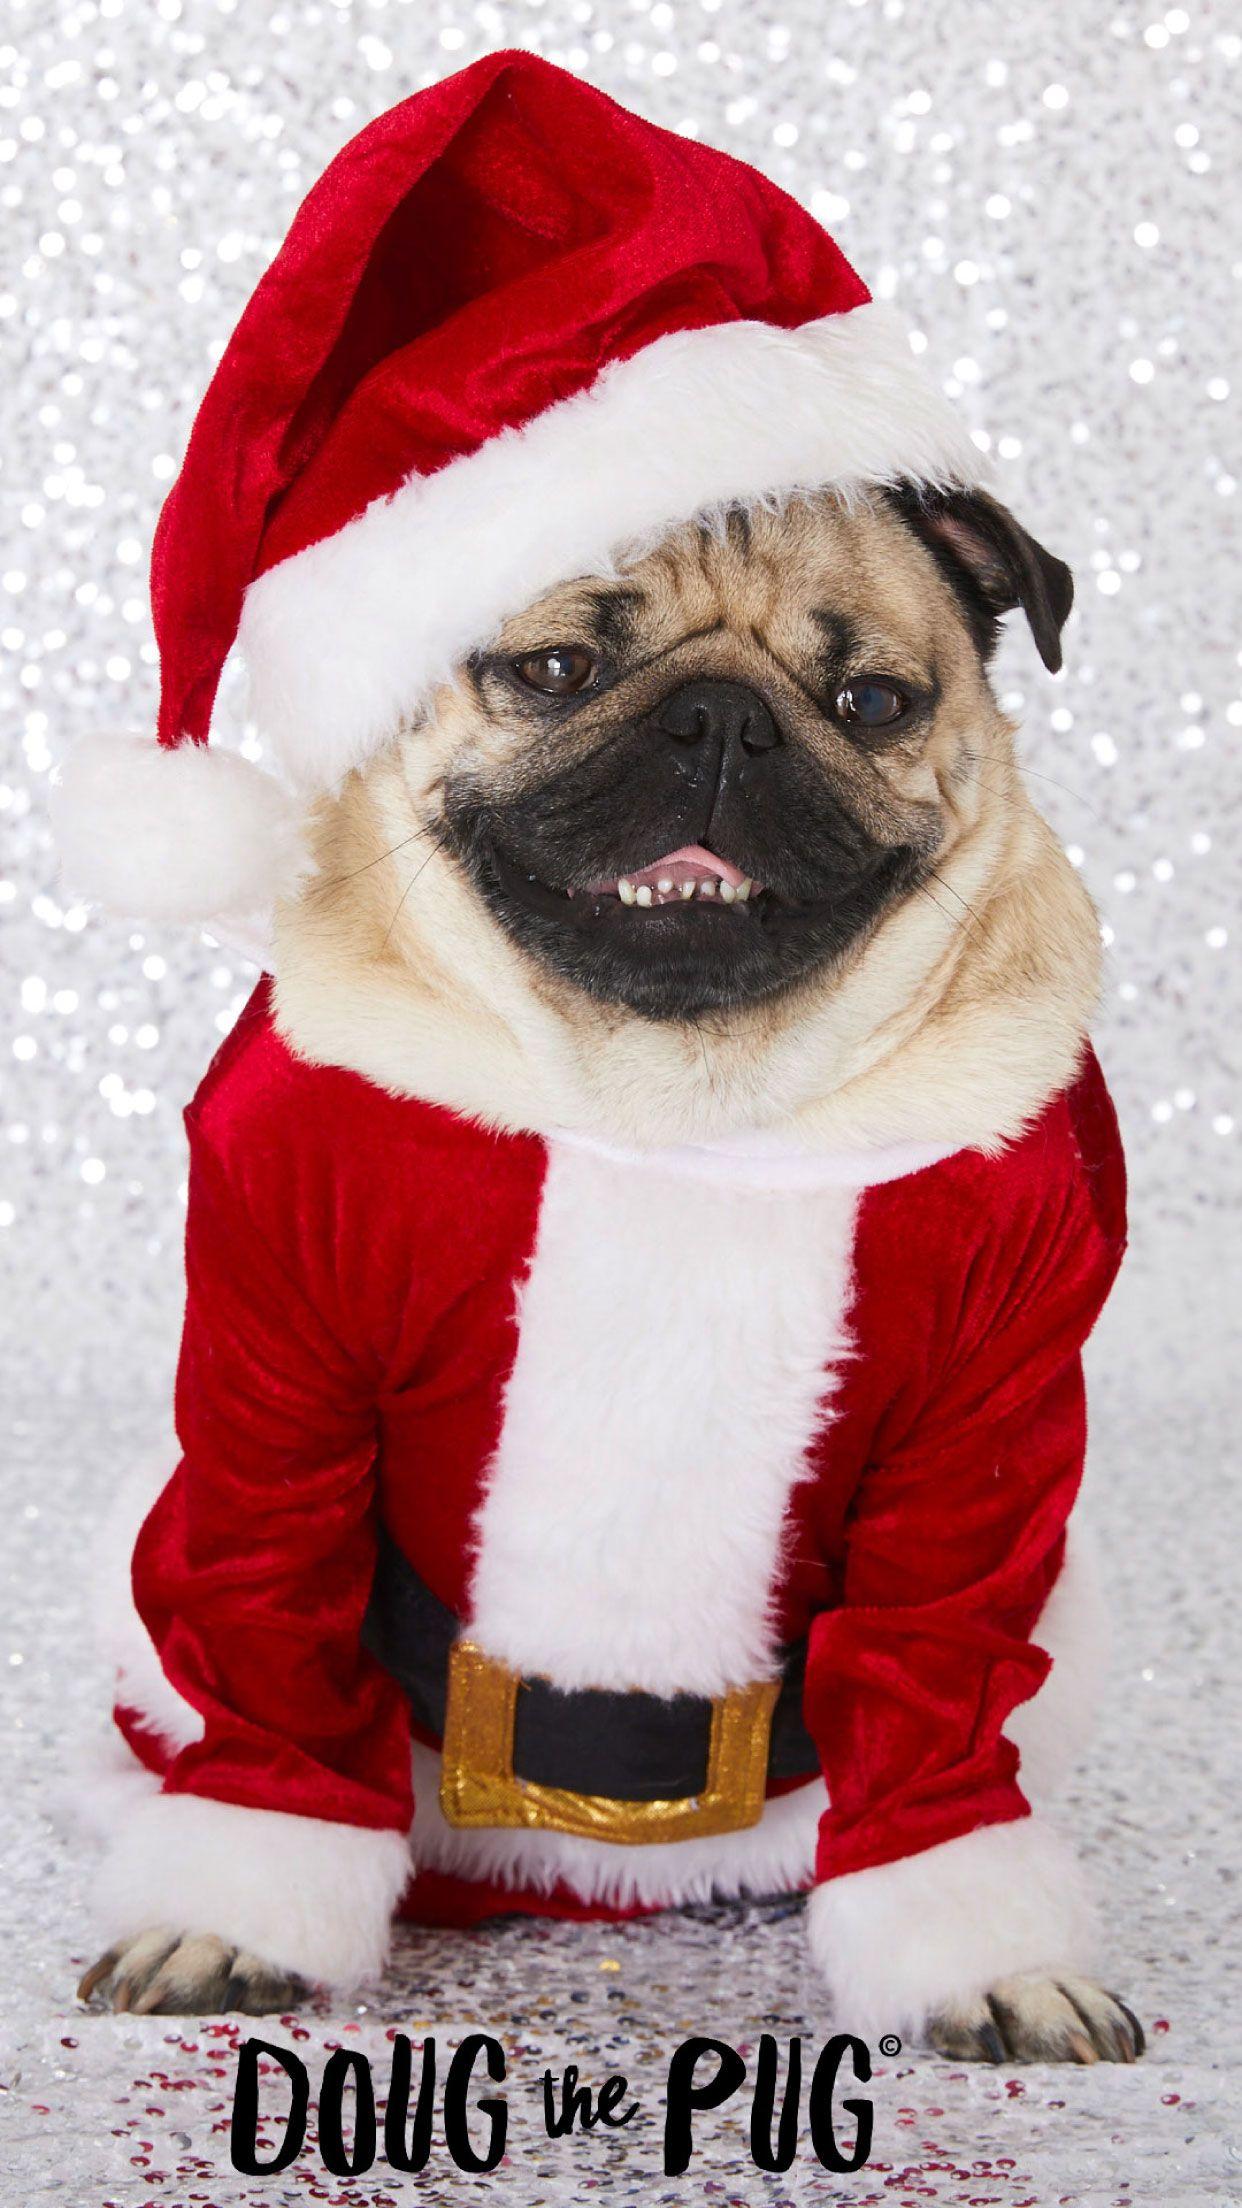 FREE Doug the Pug Christmas Wallpaper - #ClairesBlog. Pug